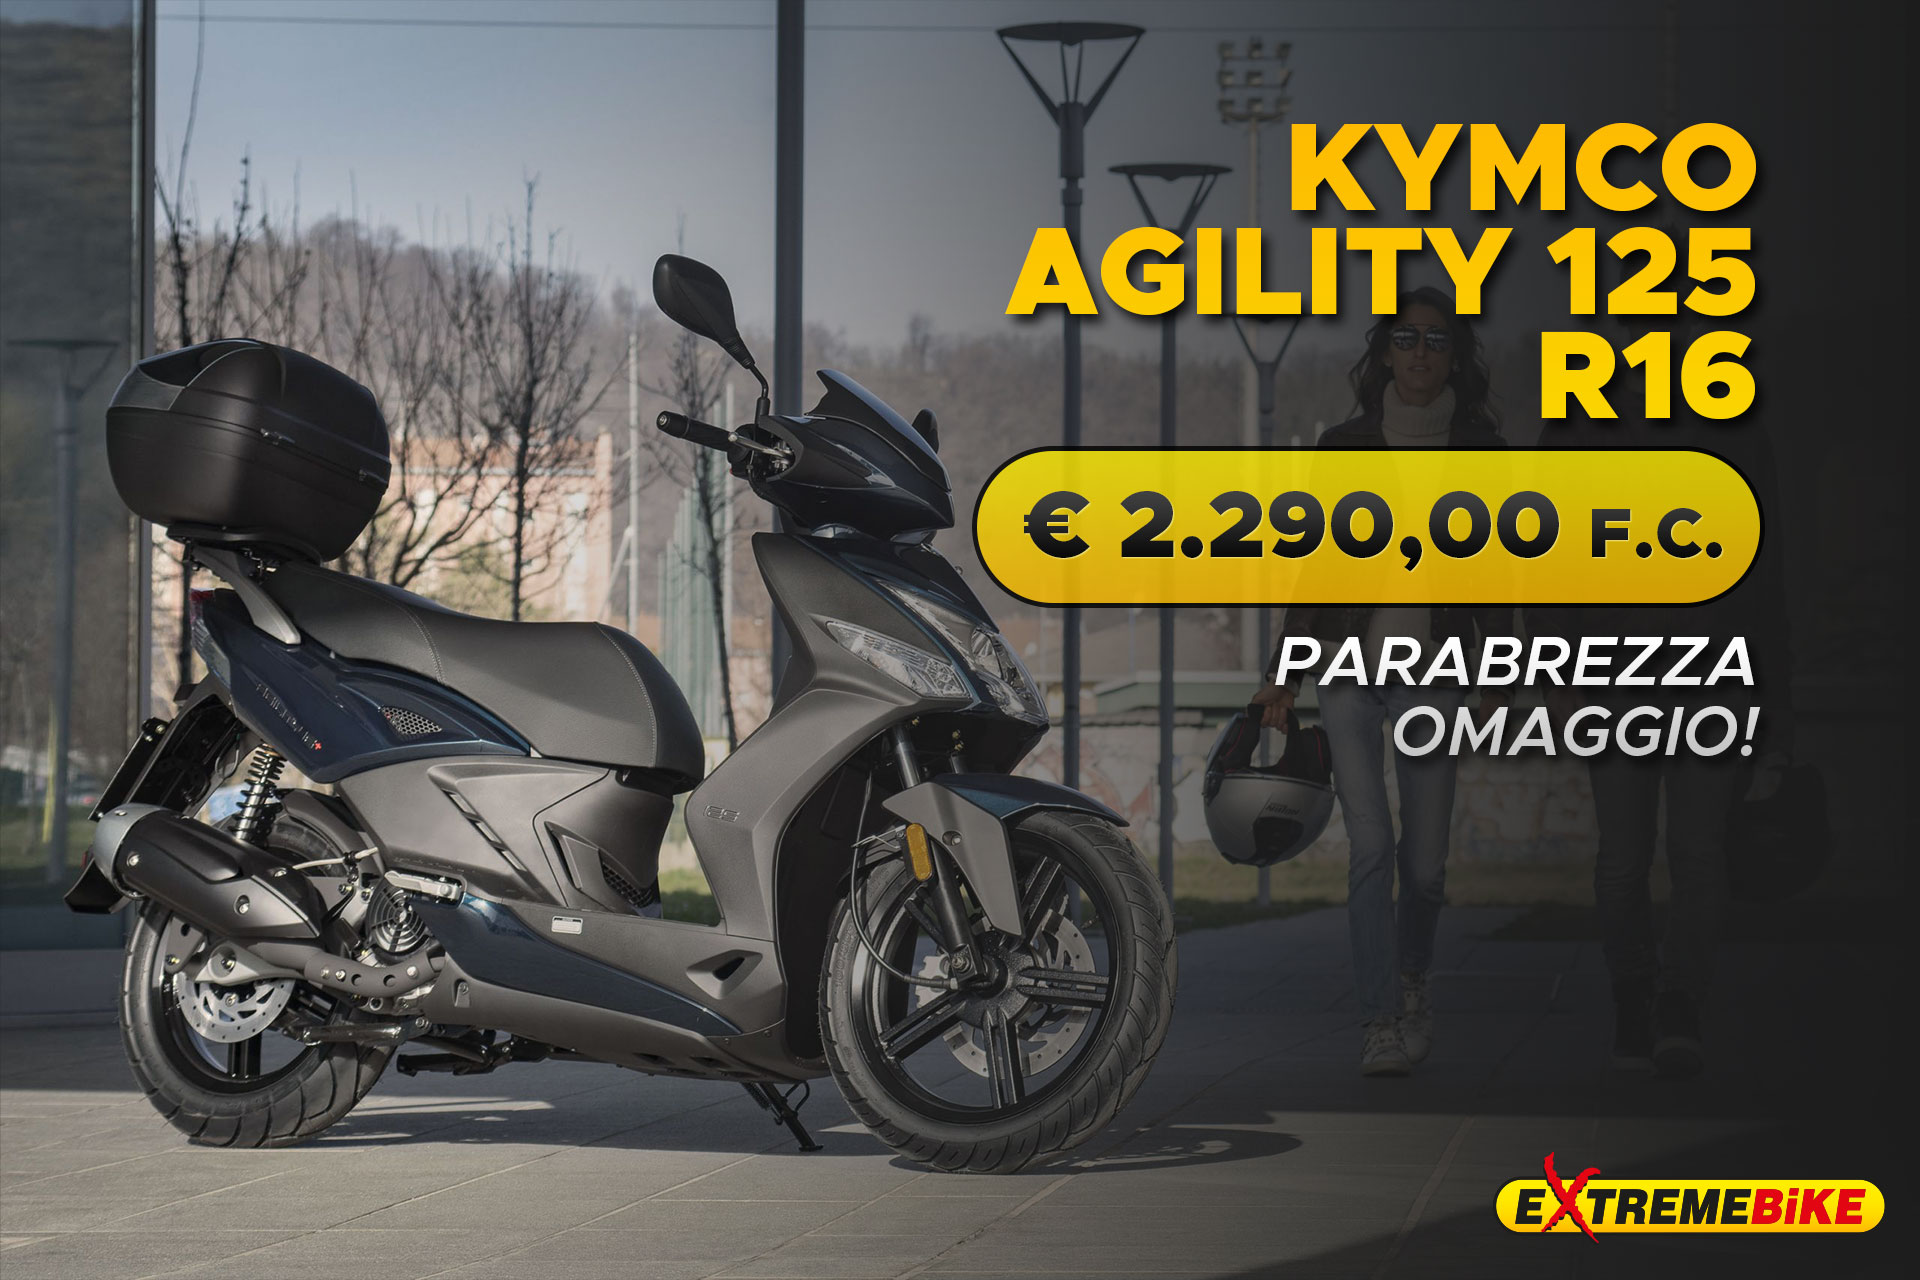 Promo Kymco Agility 125 R16 - Extreme Bike